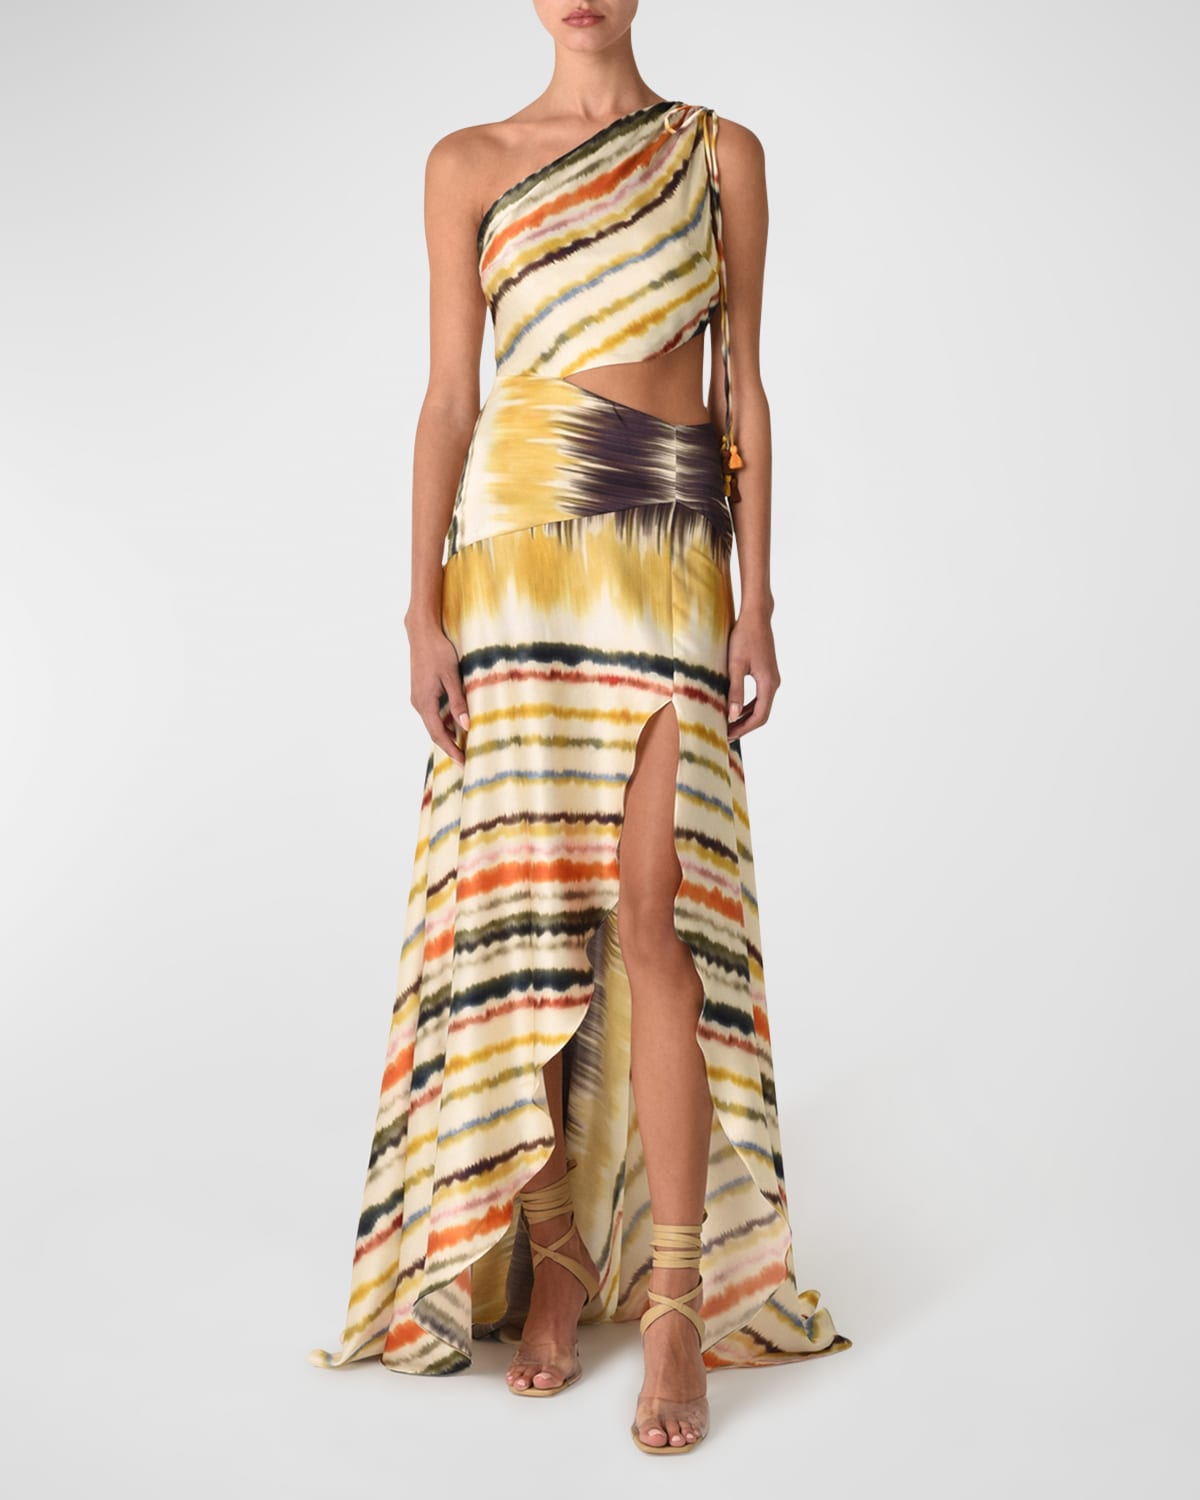 Silvia Tcherassi Whitney One-Shoulder Tie-Dye Dress w/ Cutout